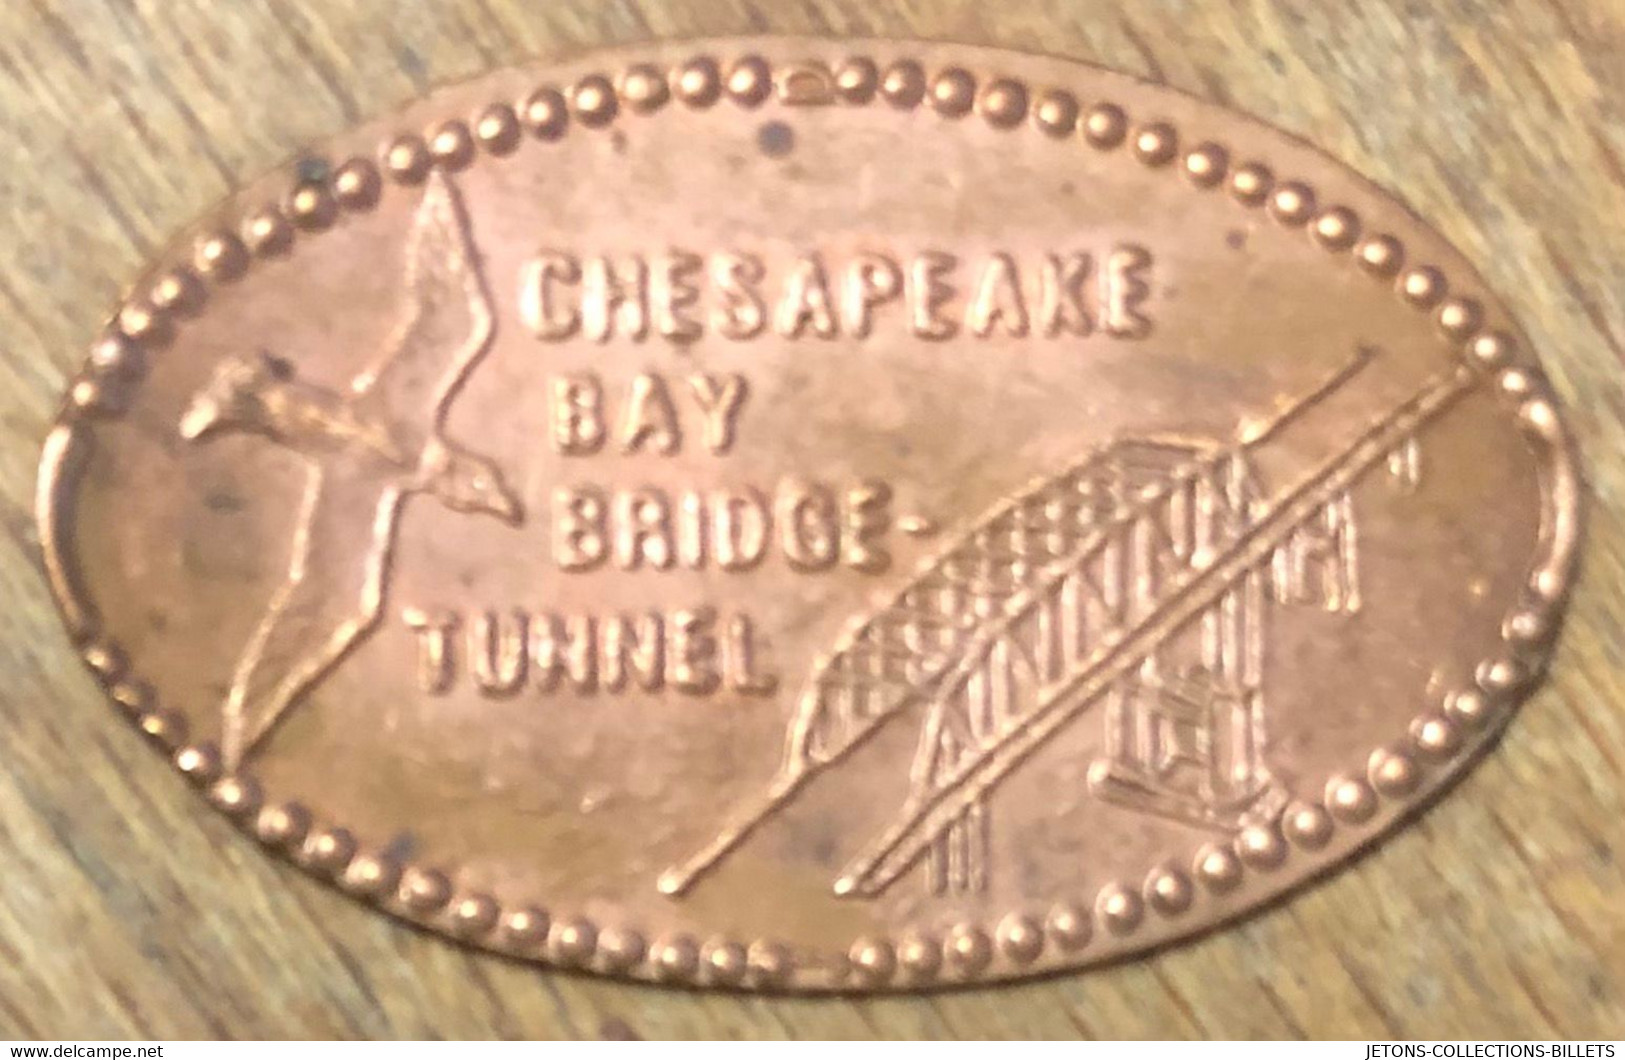 ÉTATS-UNIS USA CHESAPEAKE BAY  BRIDGE-TUNNEL PIÈCE ÉCRASÉE PENNY ELONGATED COIN MEDAILLE TOURISTIQUE MEDALS TOKENS - Elongated Coins